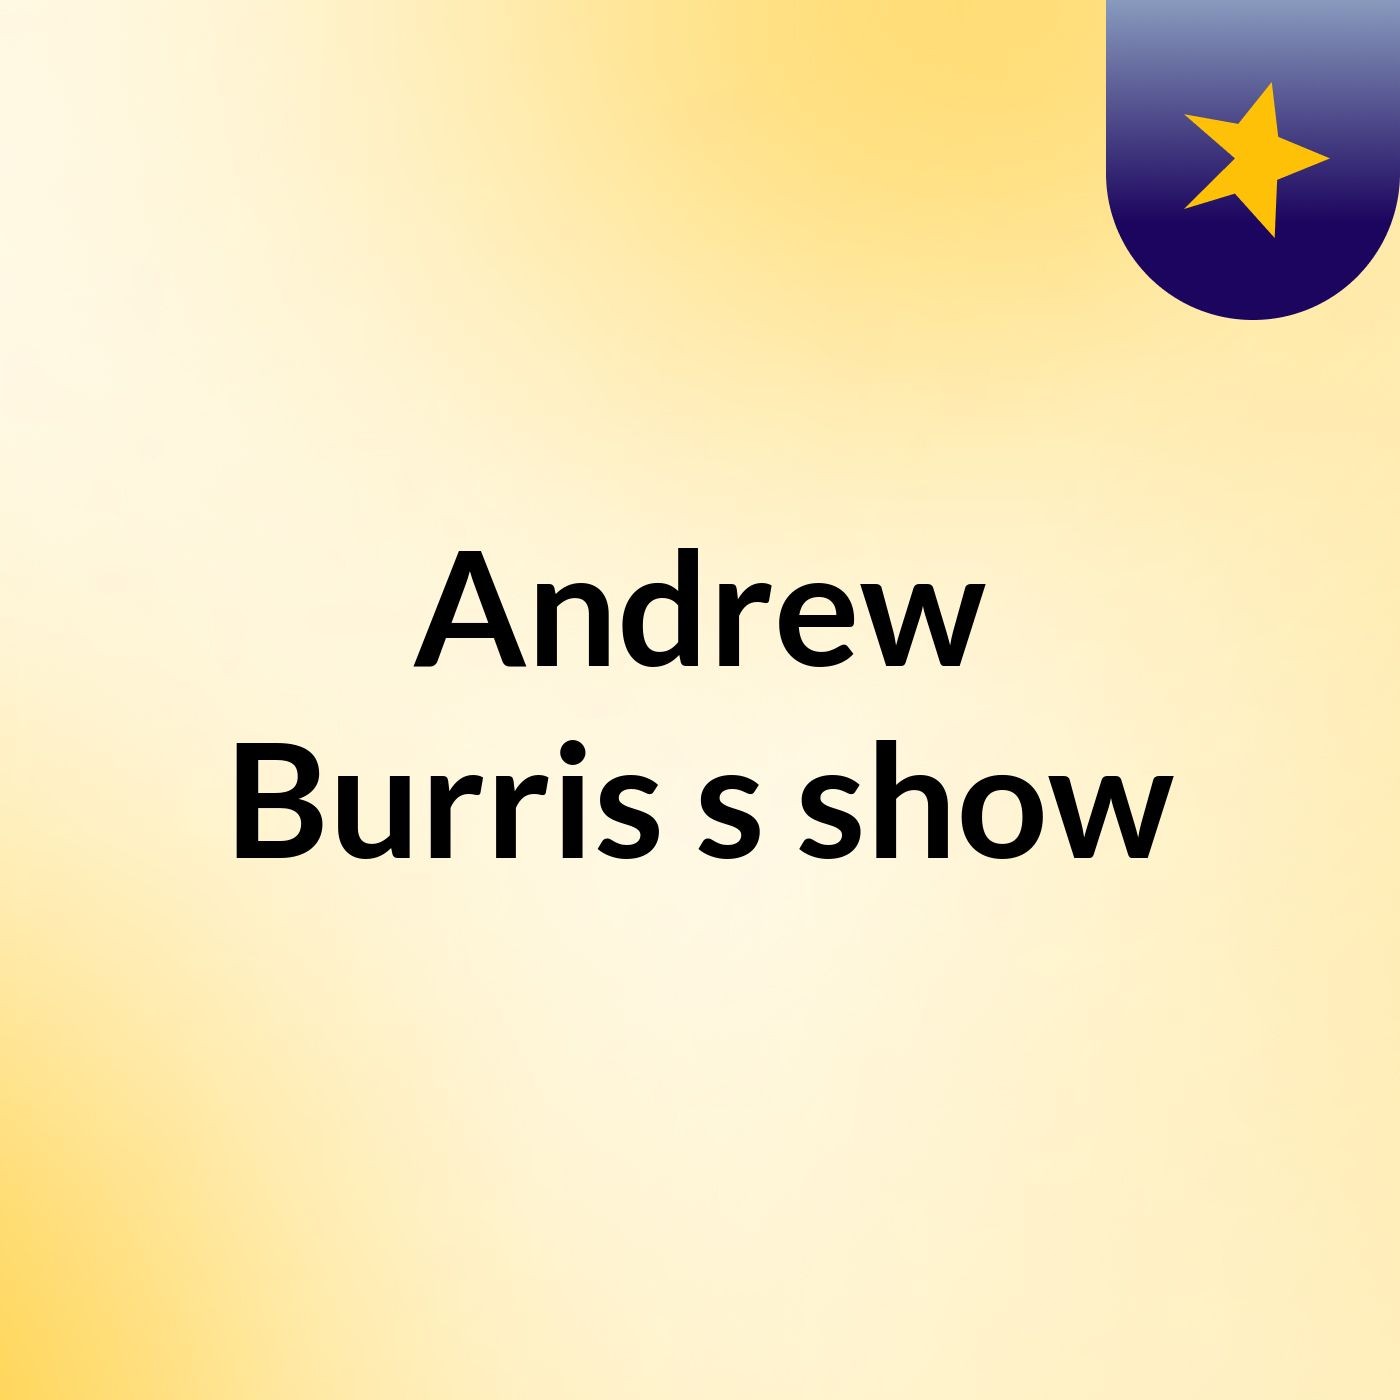 Andrew Burris's show